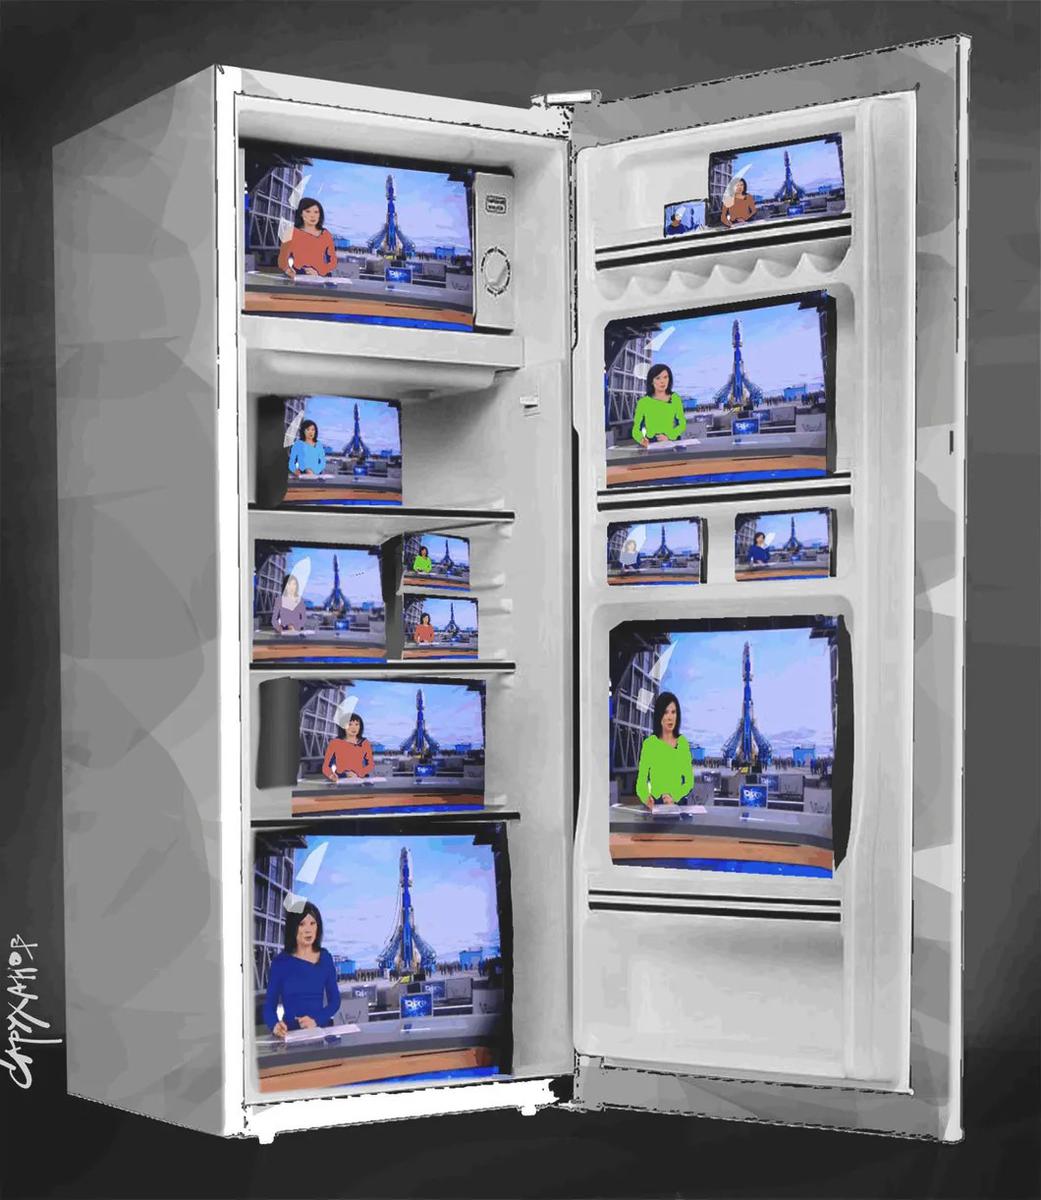 Новости бытовой техники — 2018. Теперь в холодильнике лучше смотреть телевизор!